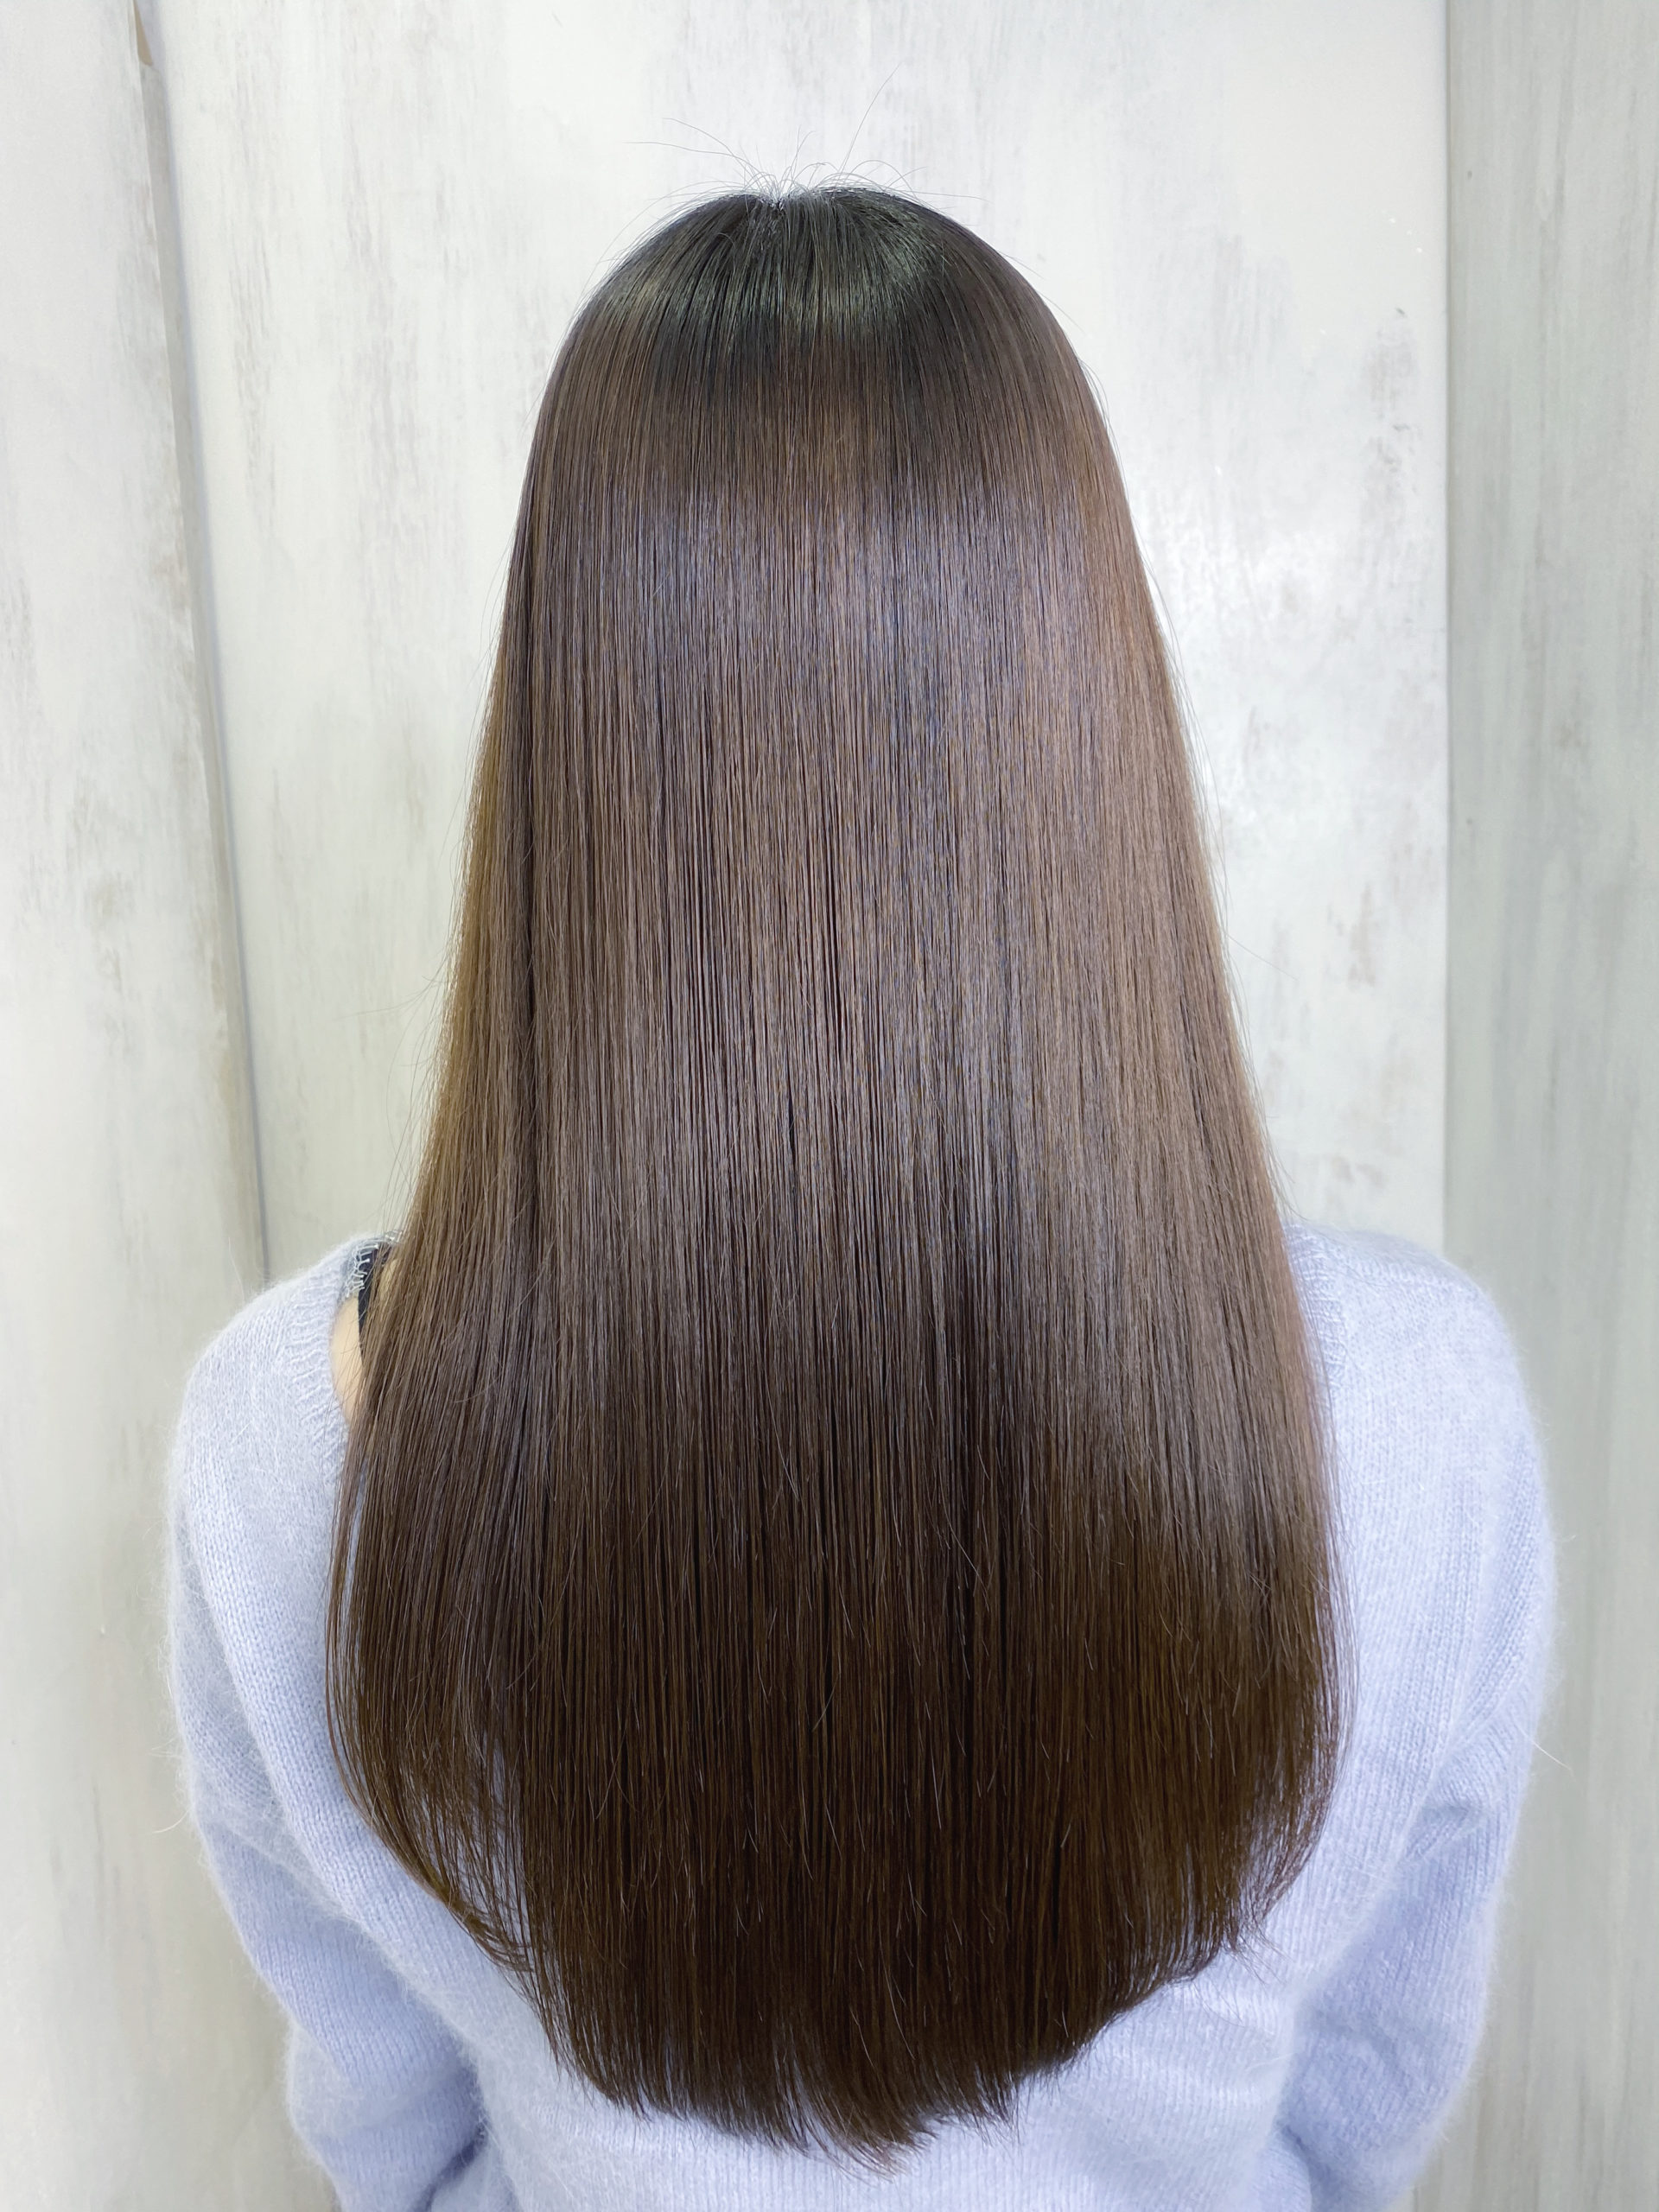 LULUトリートメント×縮毛矯正で輝く艶髪。原宿・表参道『髪のお悩みを解決するヘアケア美容師の挑戦』